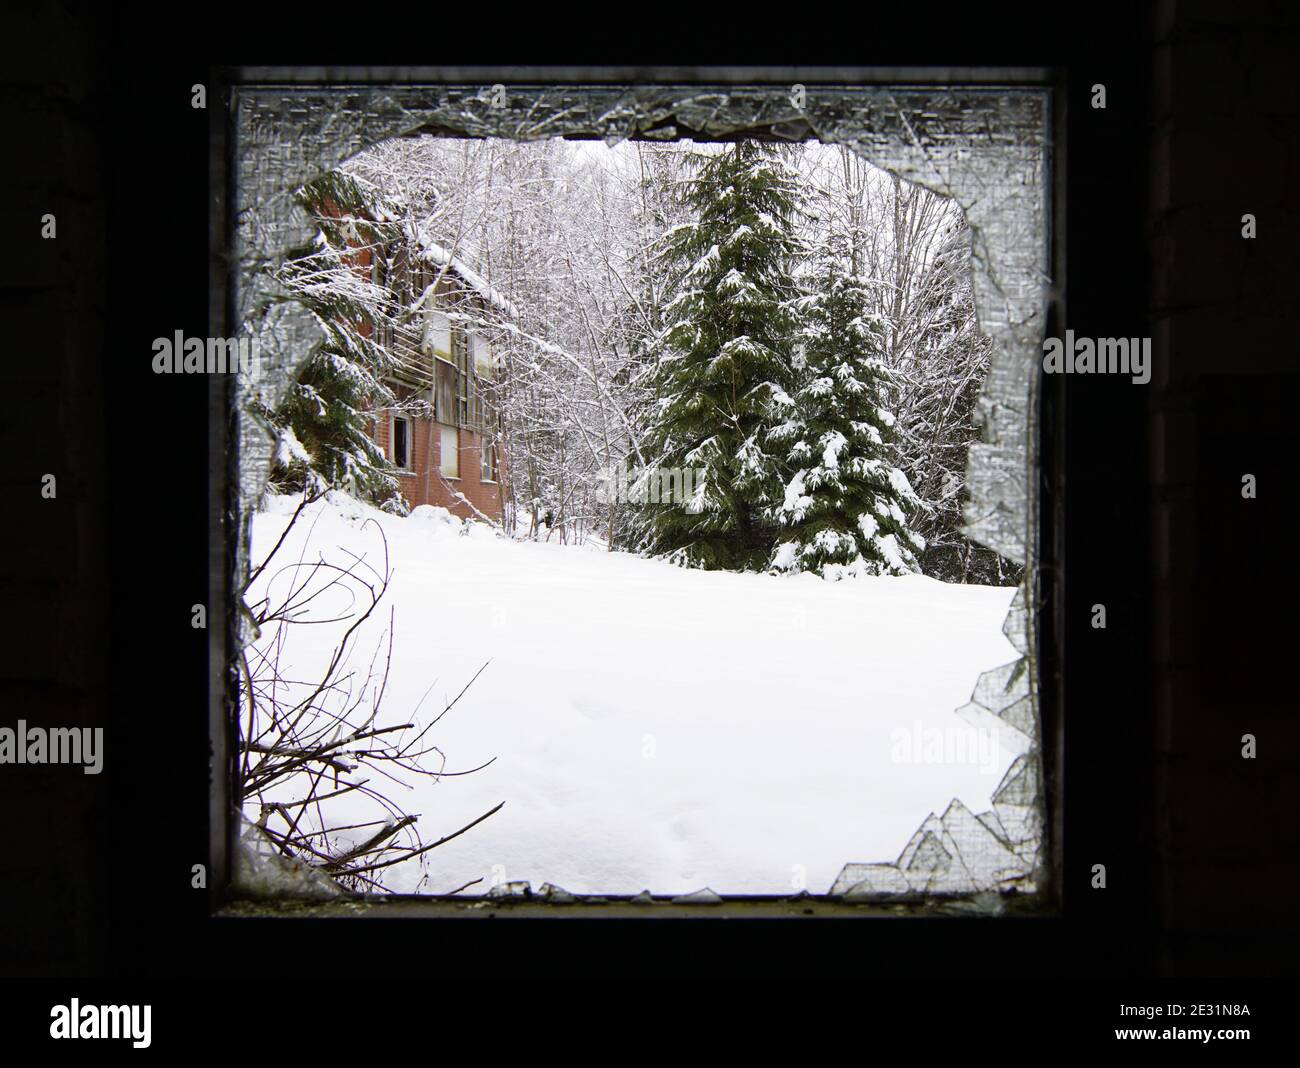 Fa freddo fuori - scenario invernale attraverso una finestra rotta Foto Stock